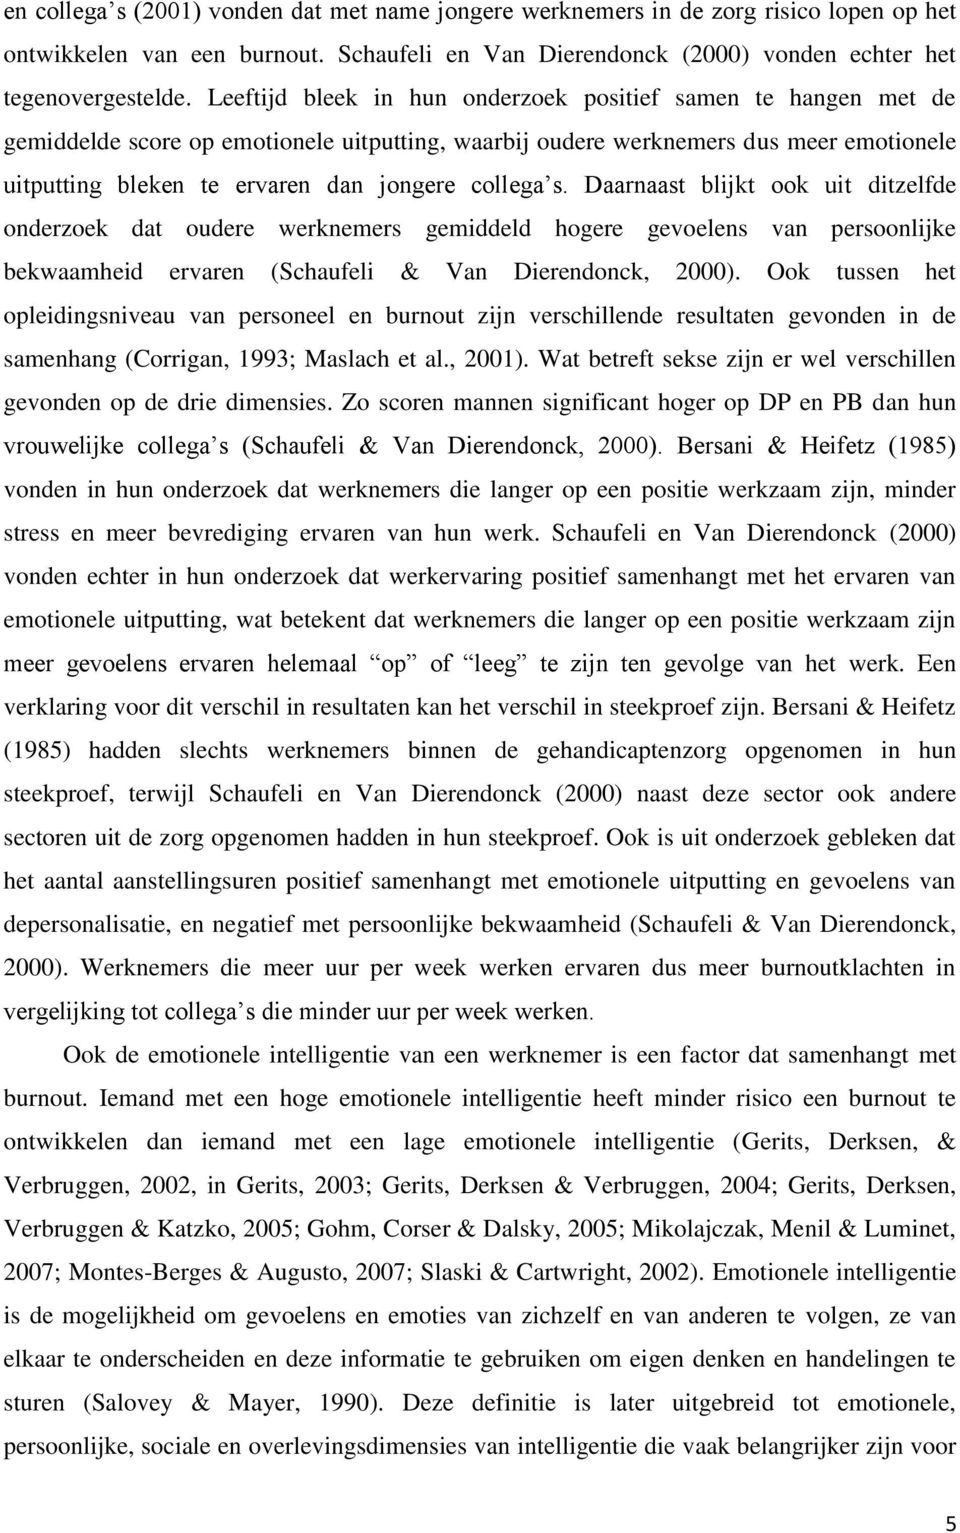 collega s. Daarnaast blijkt ook uit ditzelfde onderzoek dat oudere werknemers gemiddeld hogere gevoelens van persoonlijke bekwaamheid ervaren (Schaufeli & Van Dierendonck, 2000).